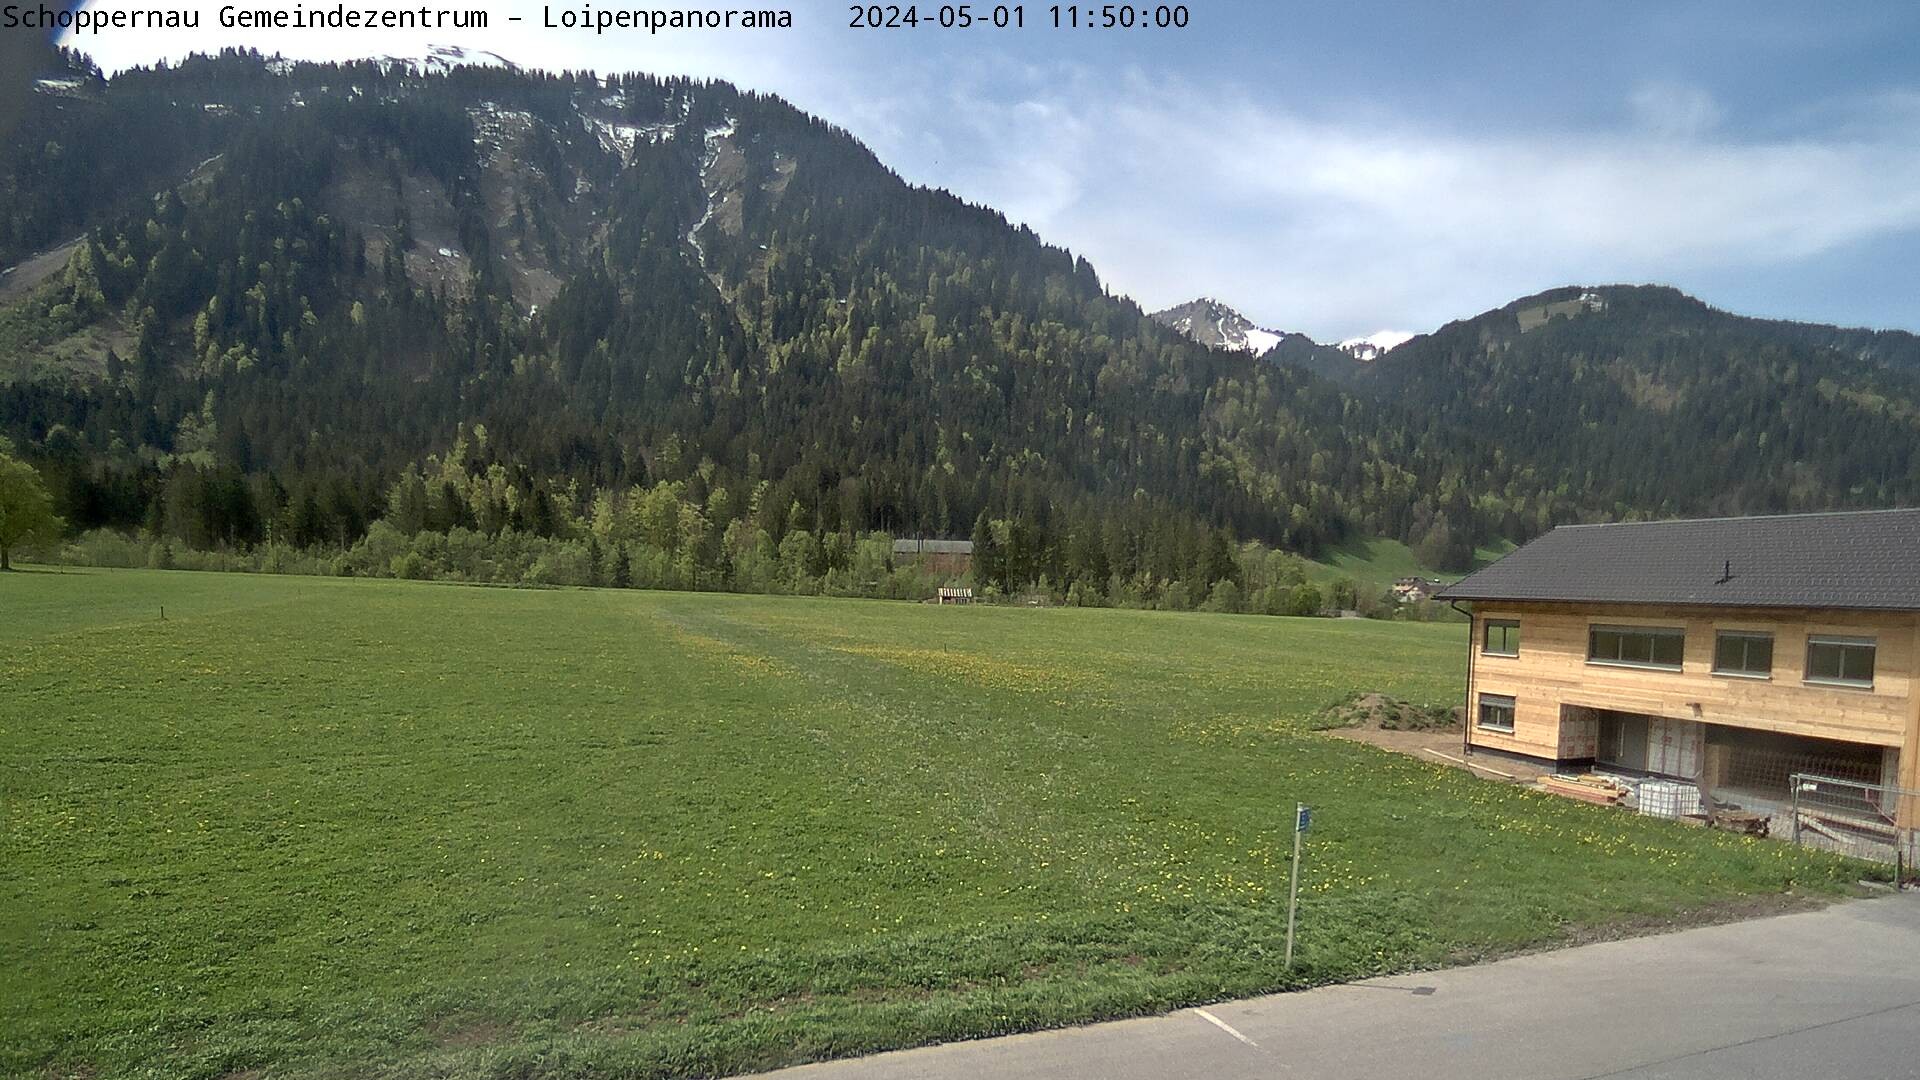 Blick auf das Tal der Au - Ortsteil Schoppernau 800 m